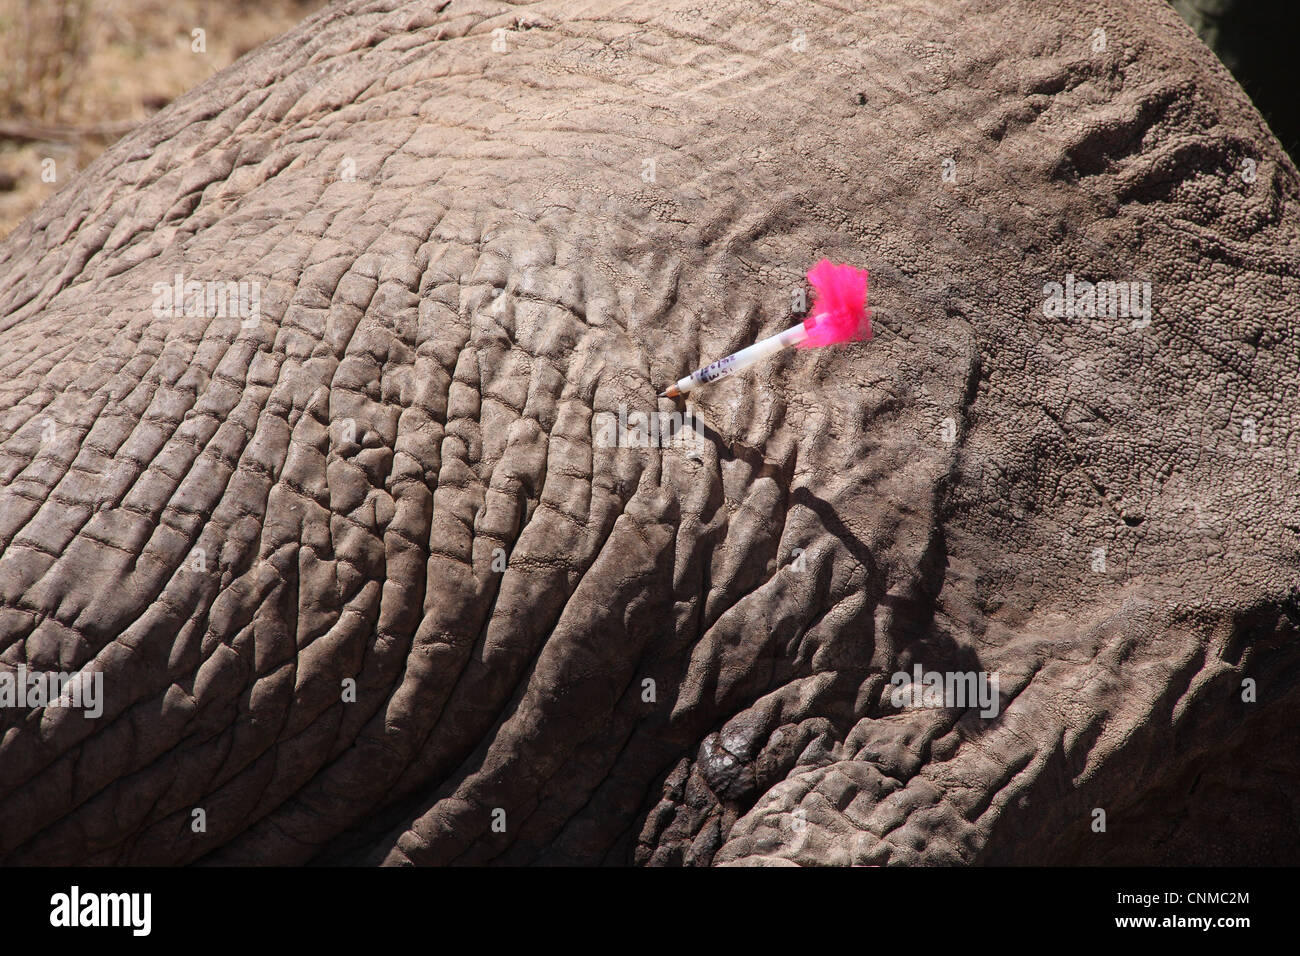 Elefante Africano Loxodonta africana adulto tranquilised tranquilizante dart con heridas de bala en la piel tratada por vet Buffalo Foto de stock